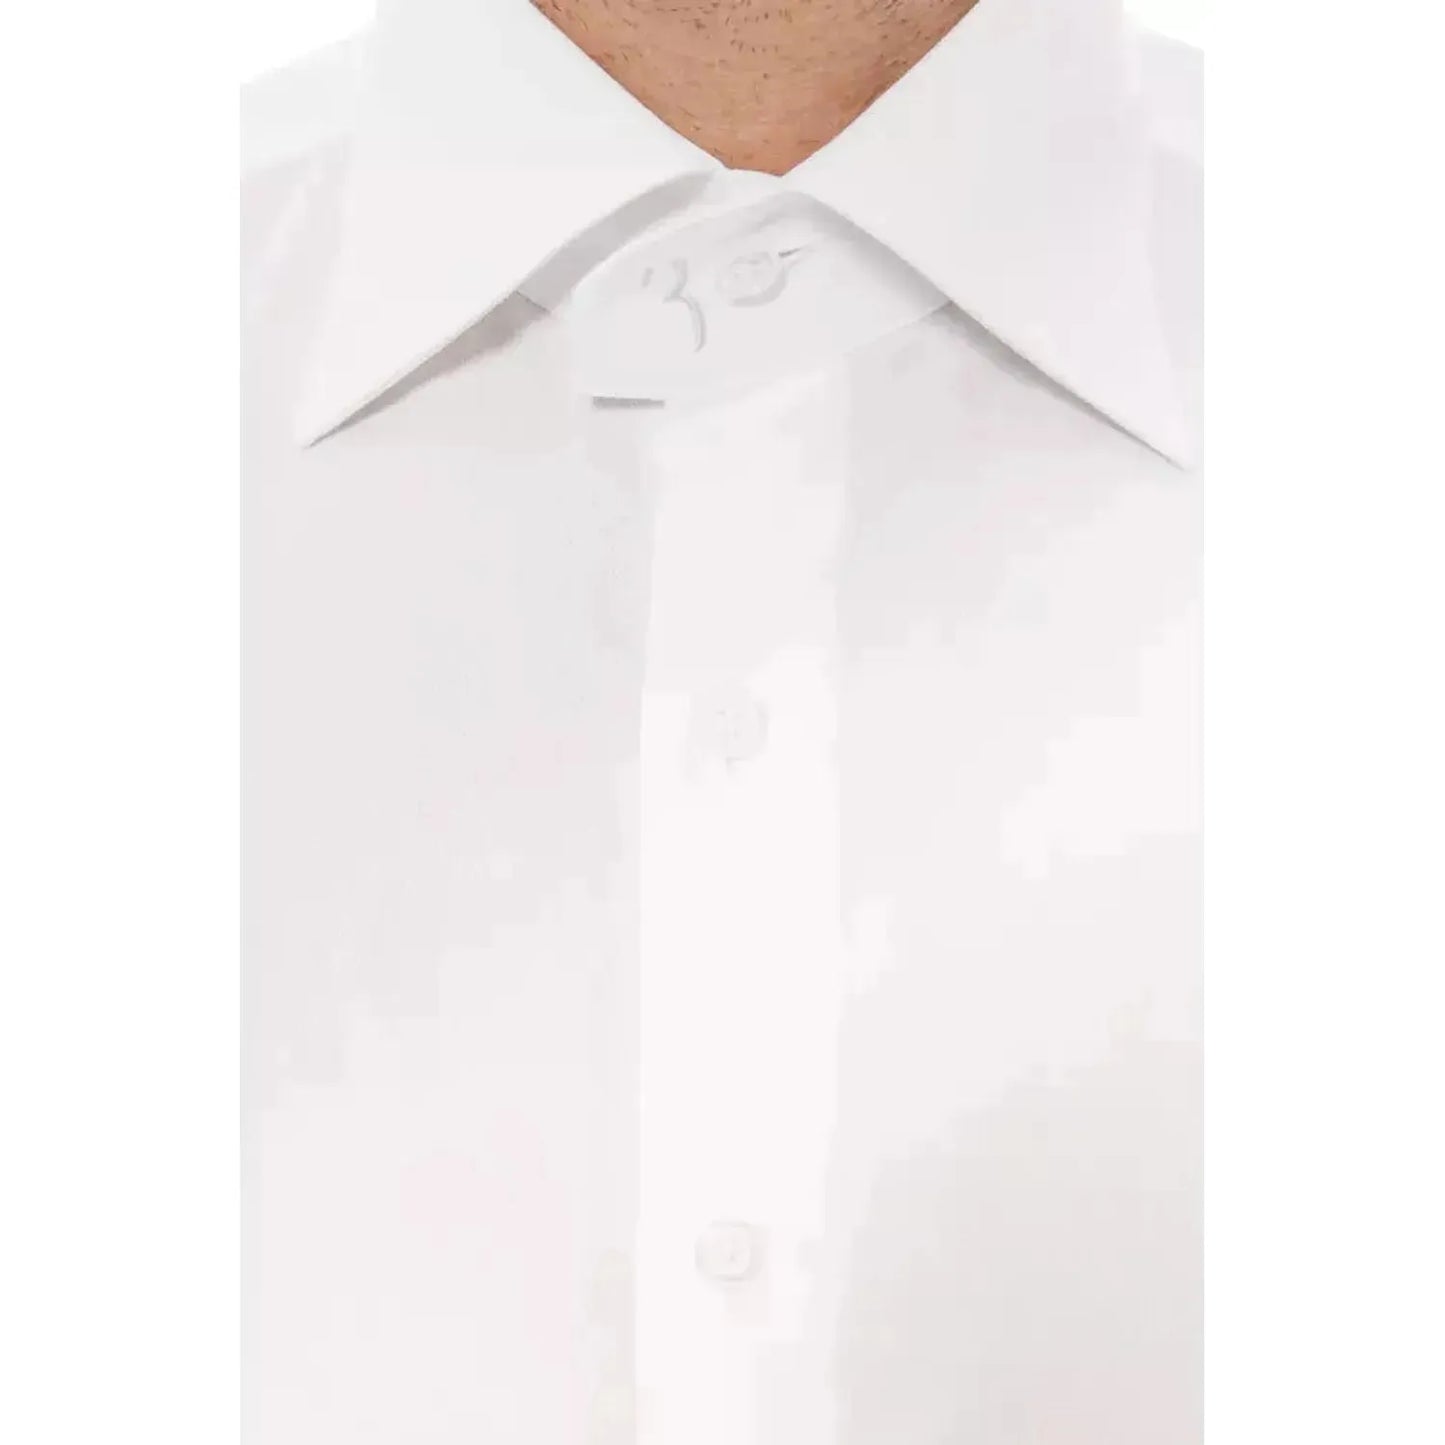 Billionaire Italian Couture Elegant Monogrammed White Cotton Shirt white-cotton-shirt-30